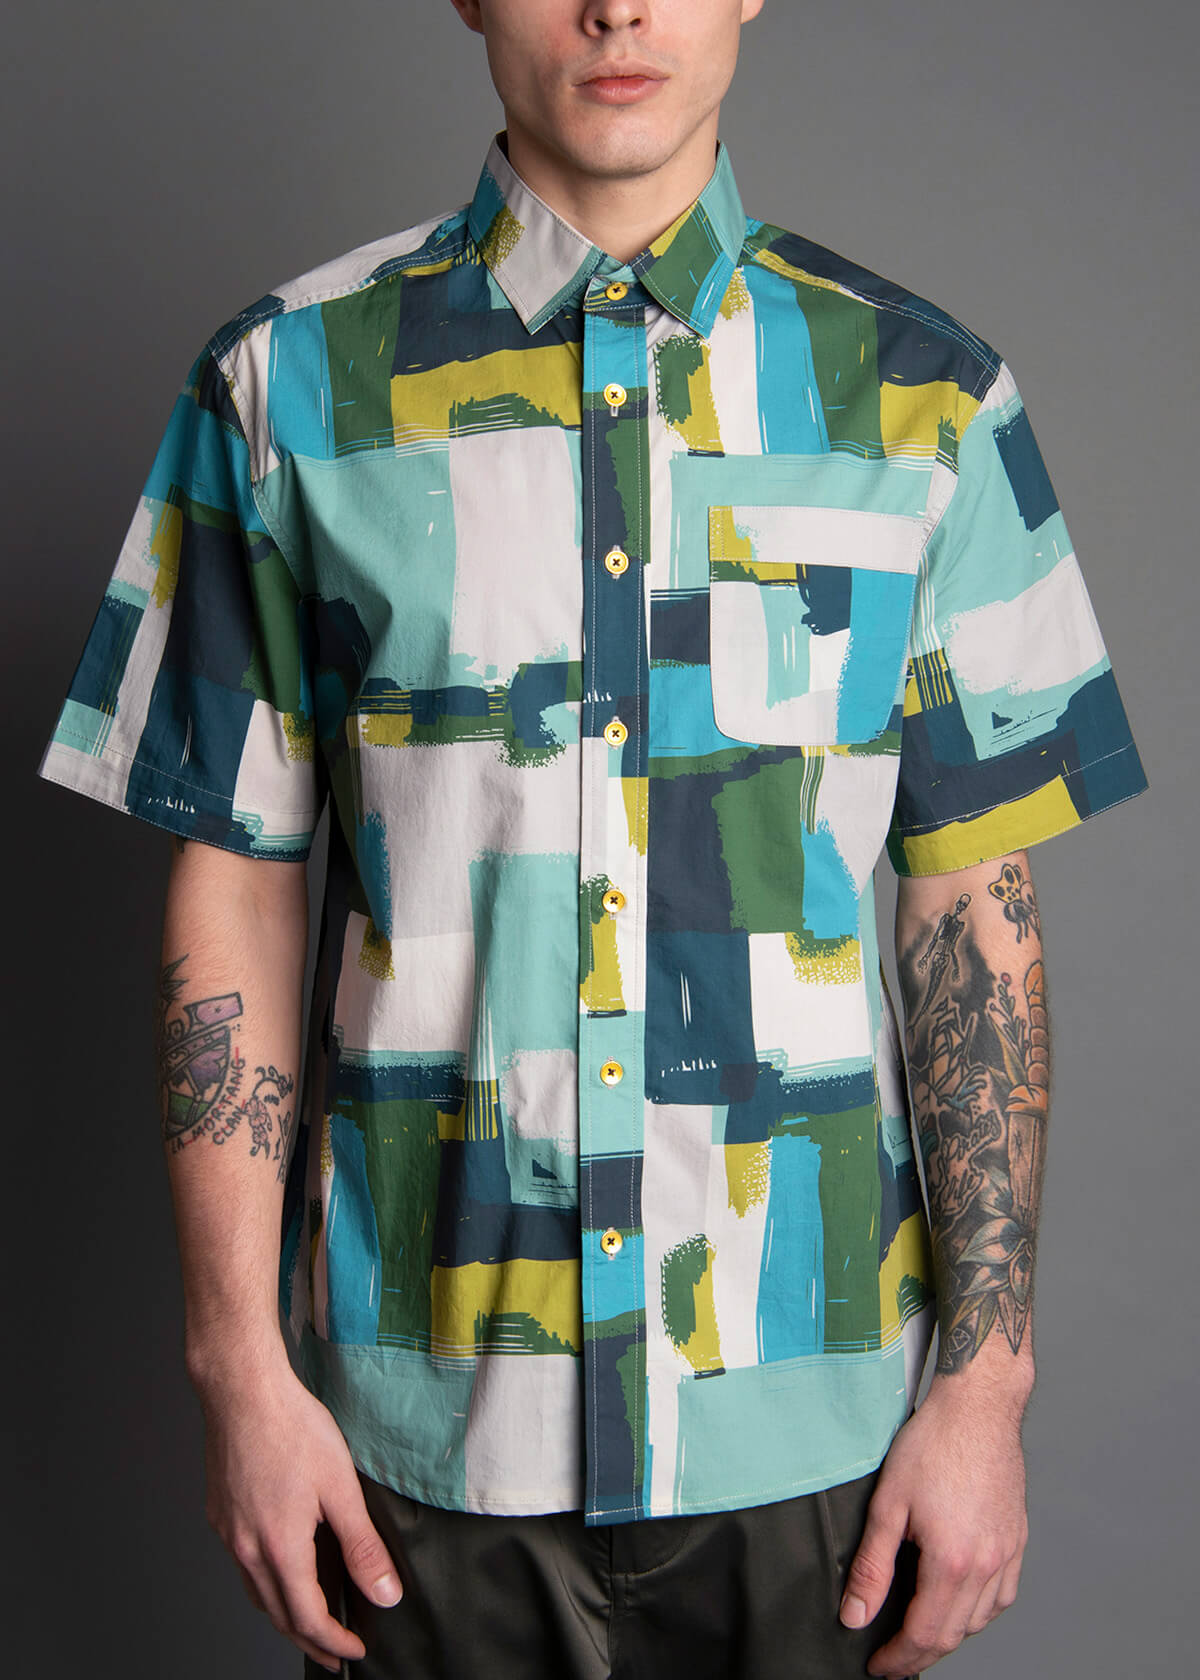 block art inspired short sleeve men's shirt